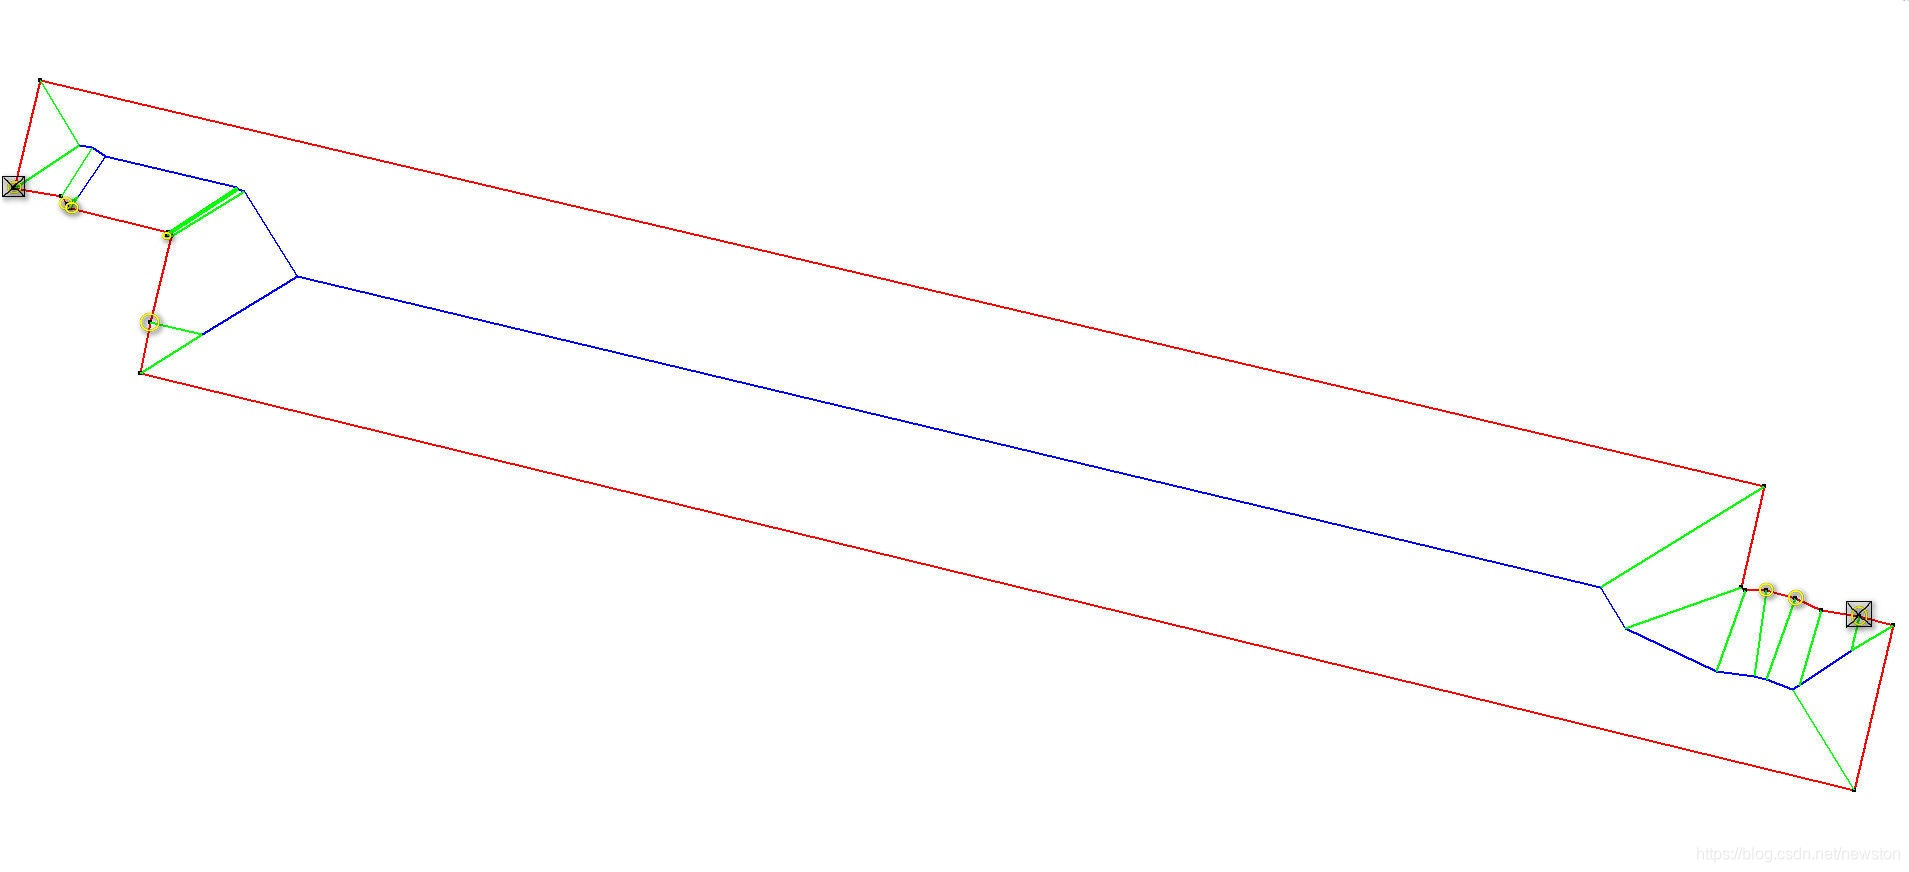 结合交点，交叉点(重叠区域镶嵌线起始、结束点)